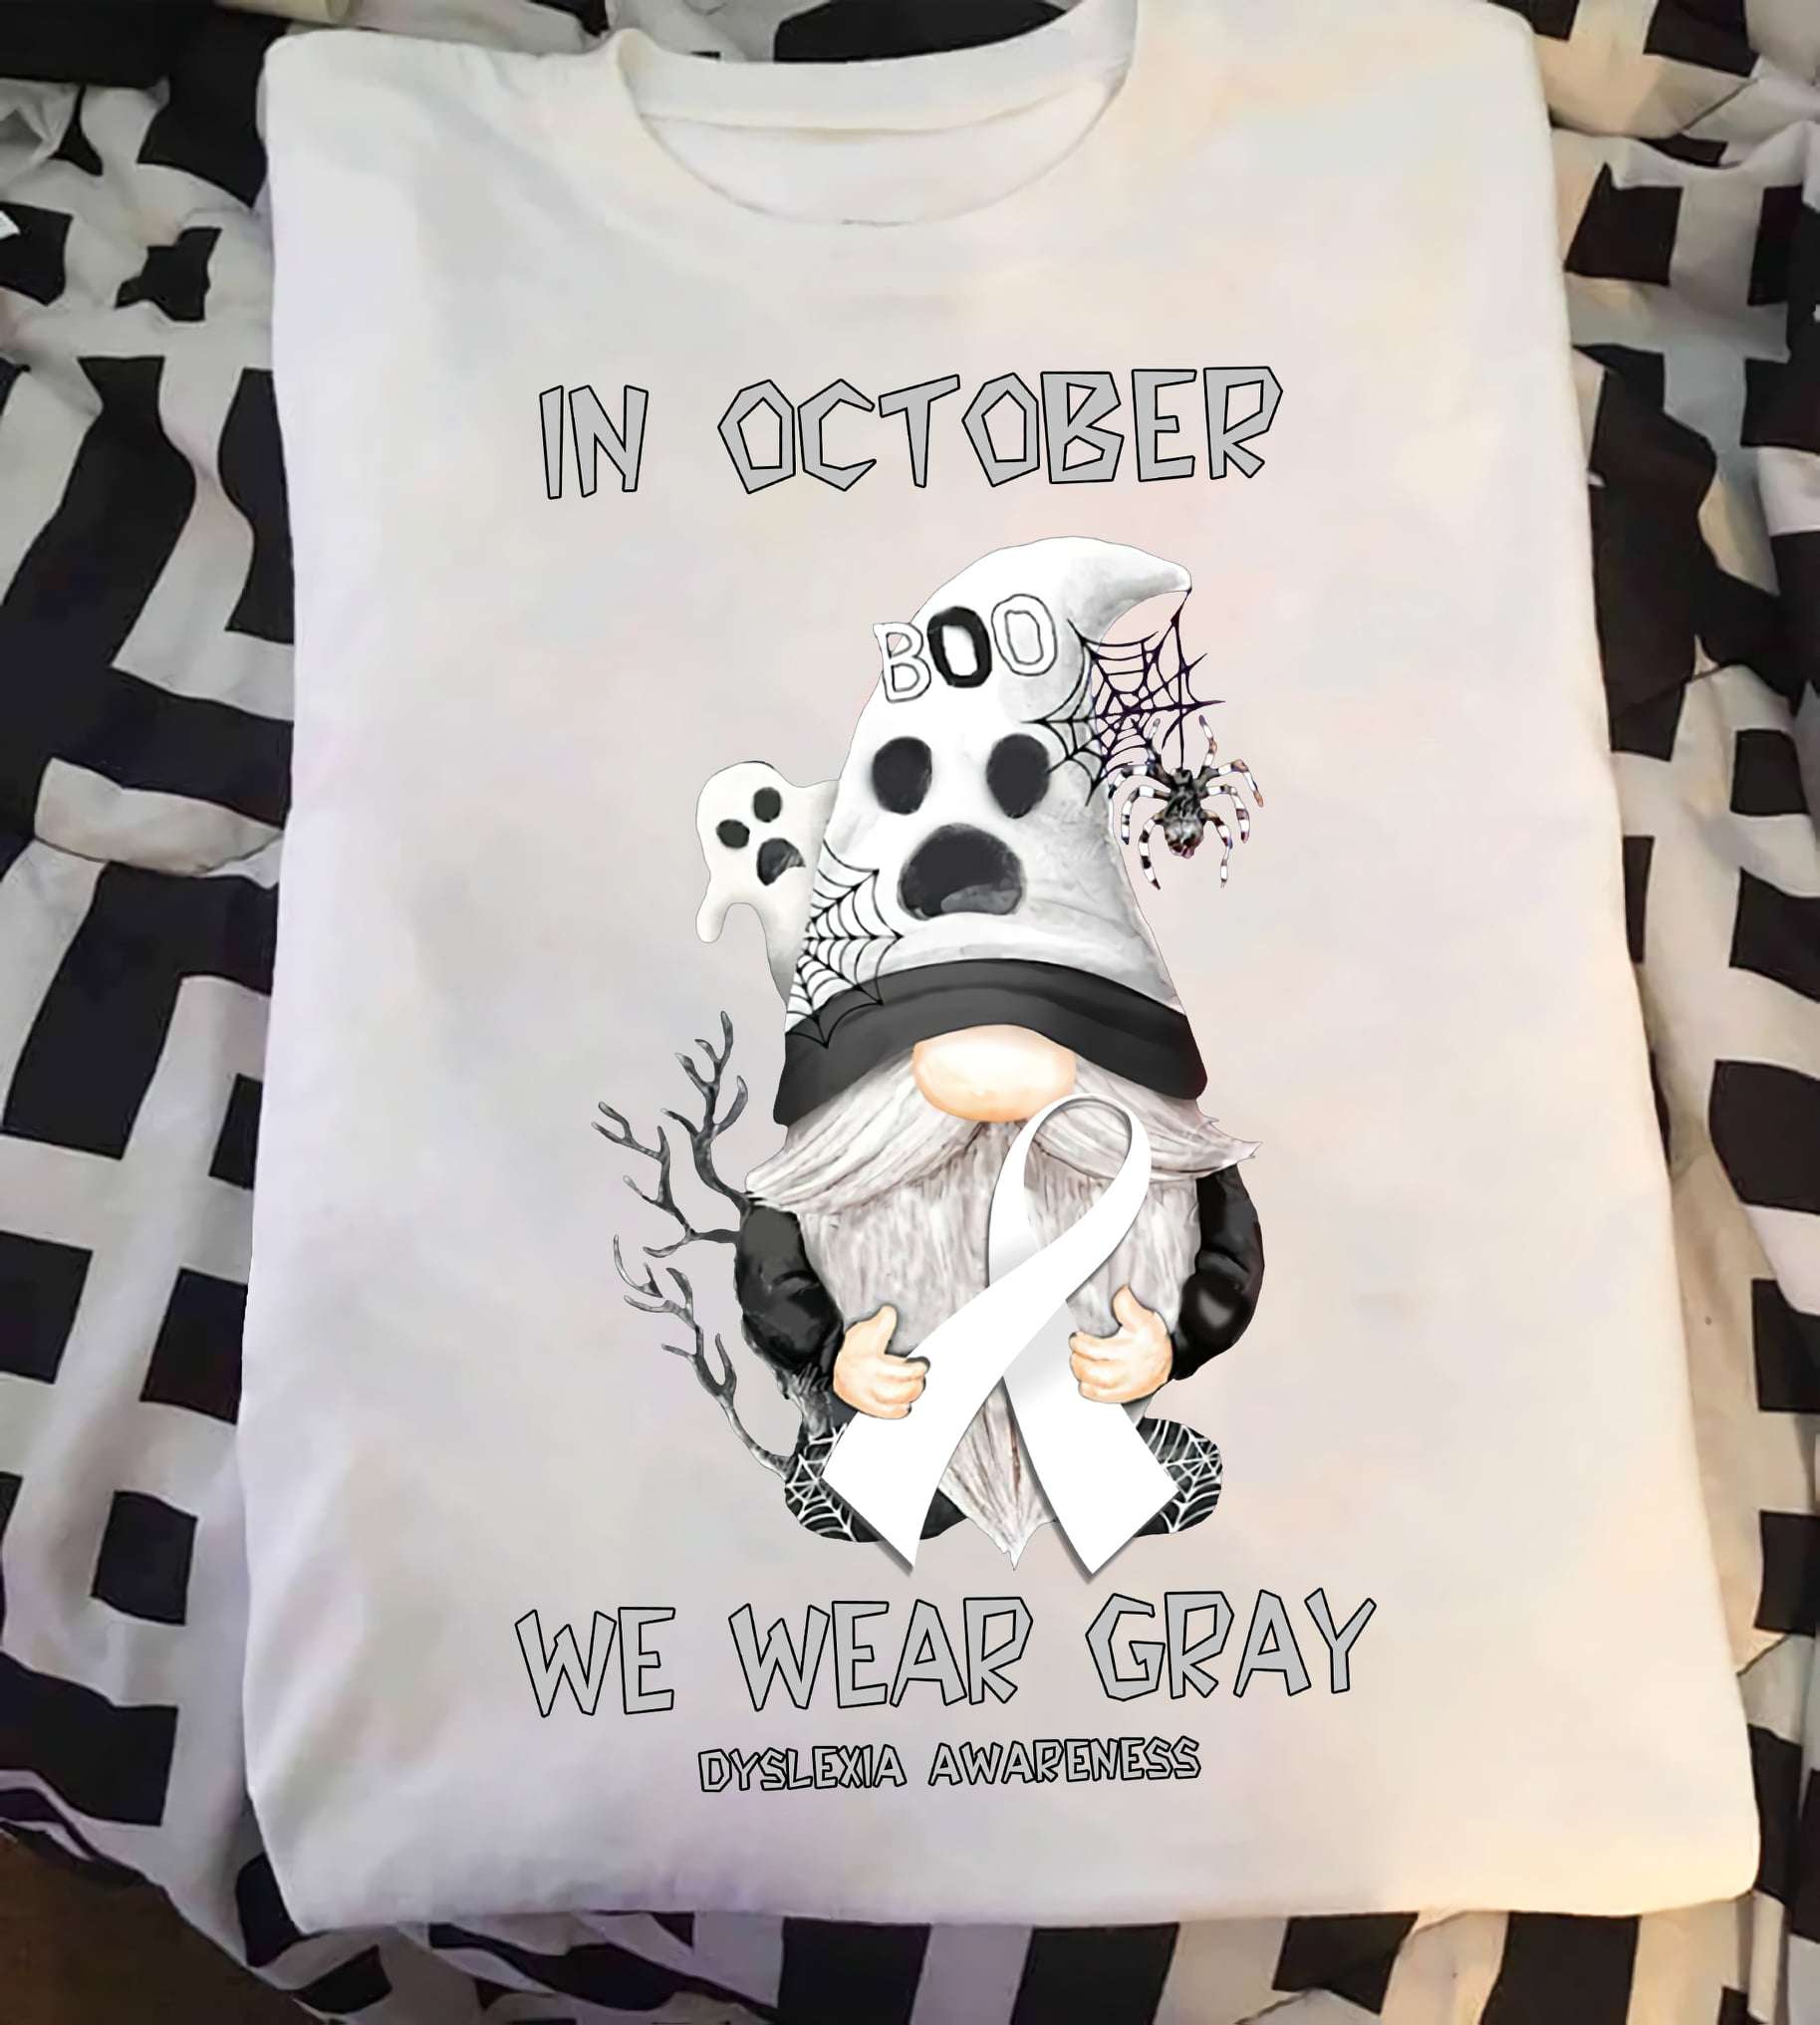 In October we wear gray - Dyslexia awareness, garden gnome dyslexia, Halloween white boo